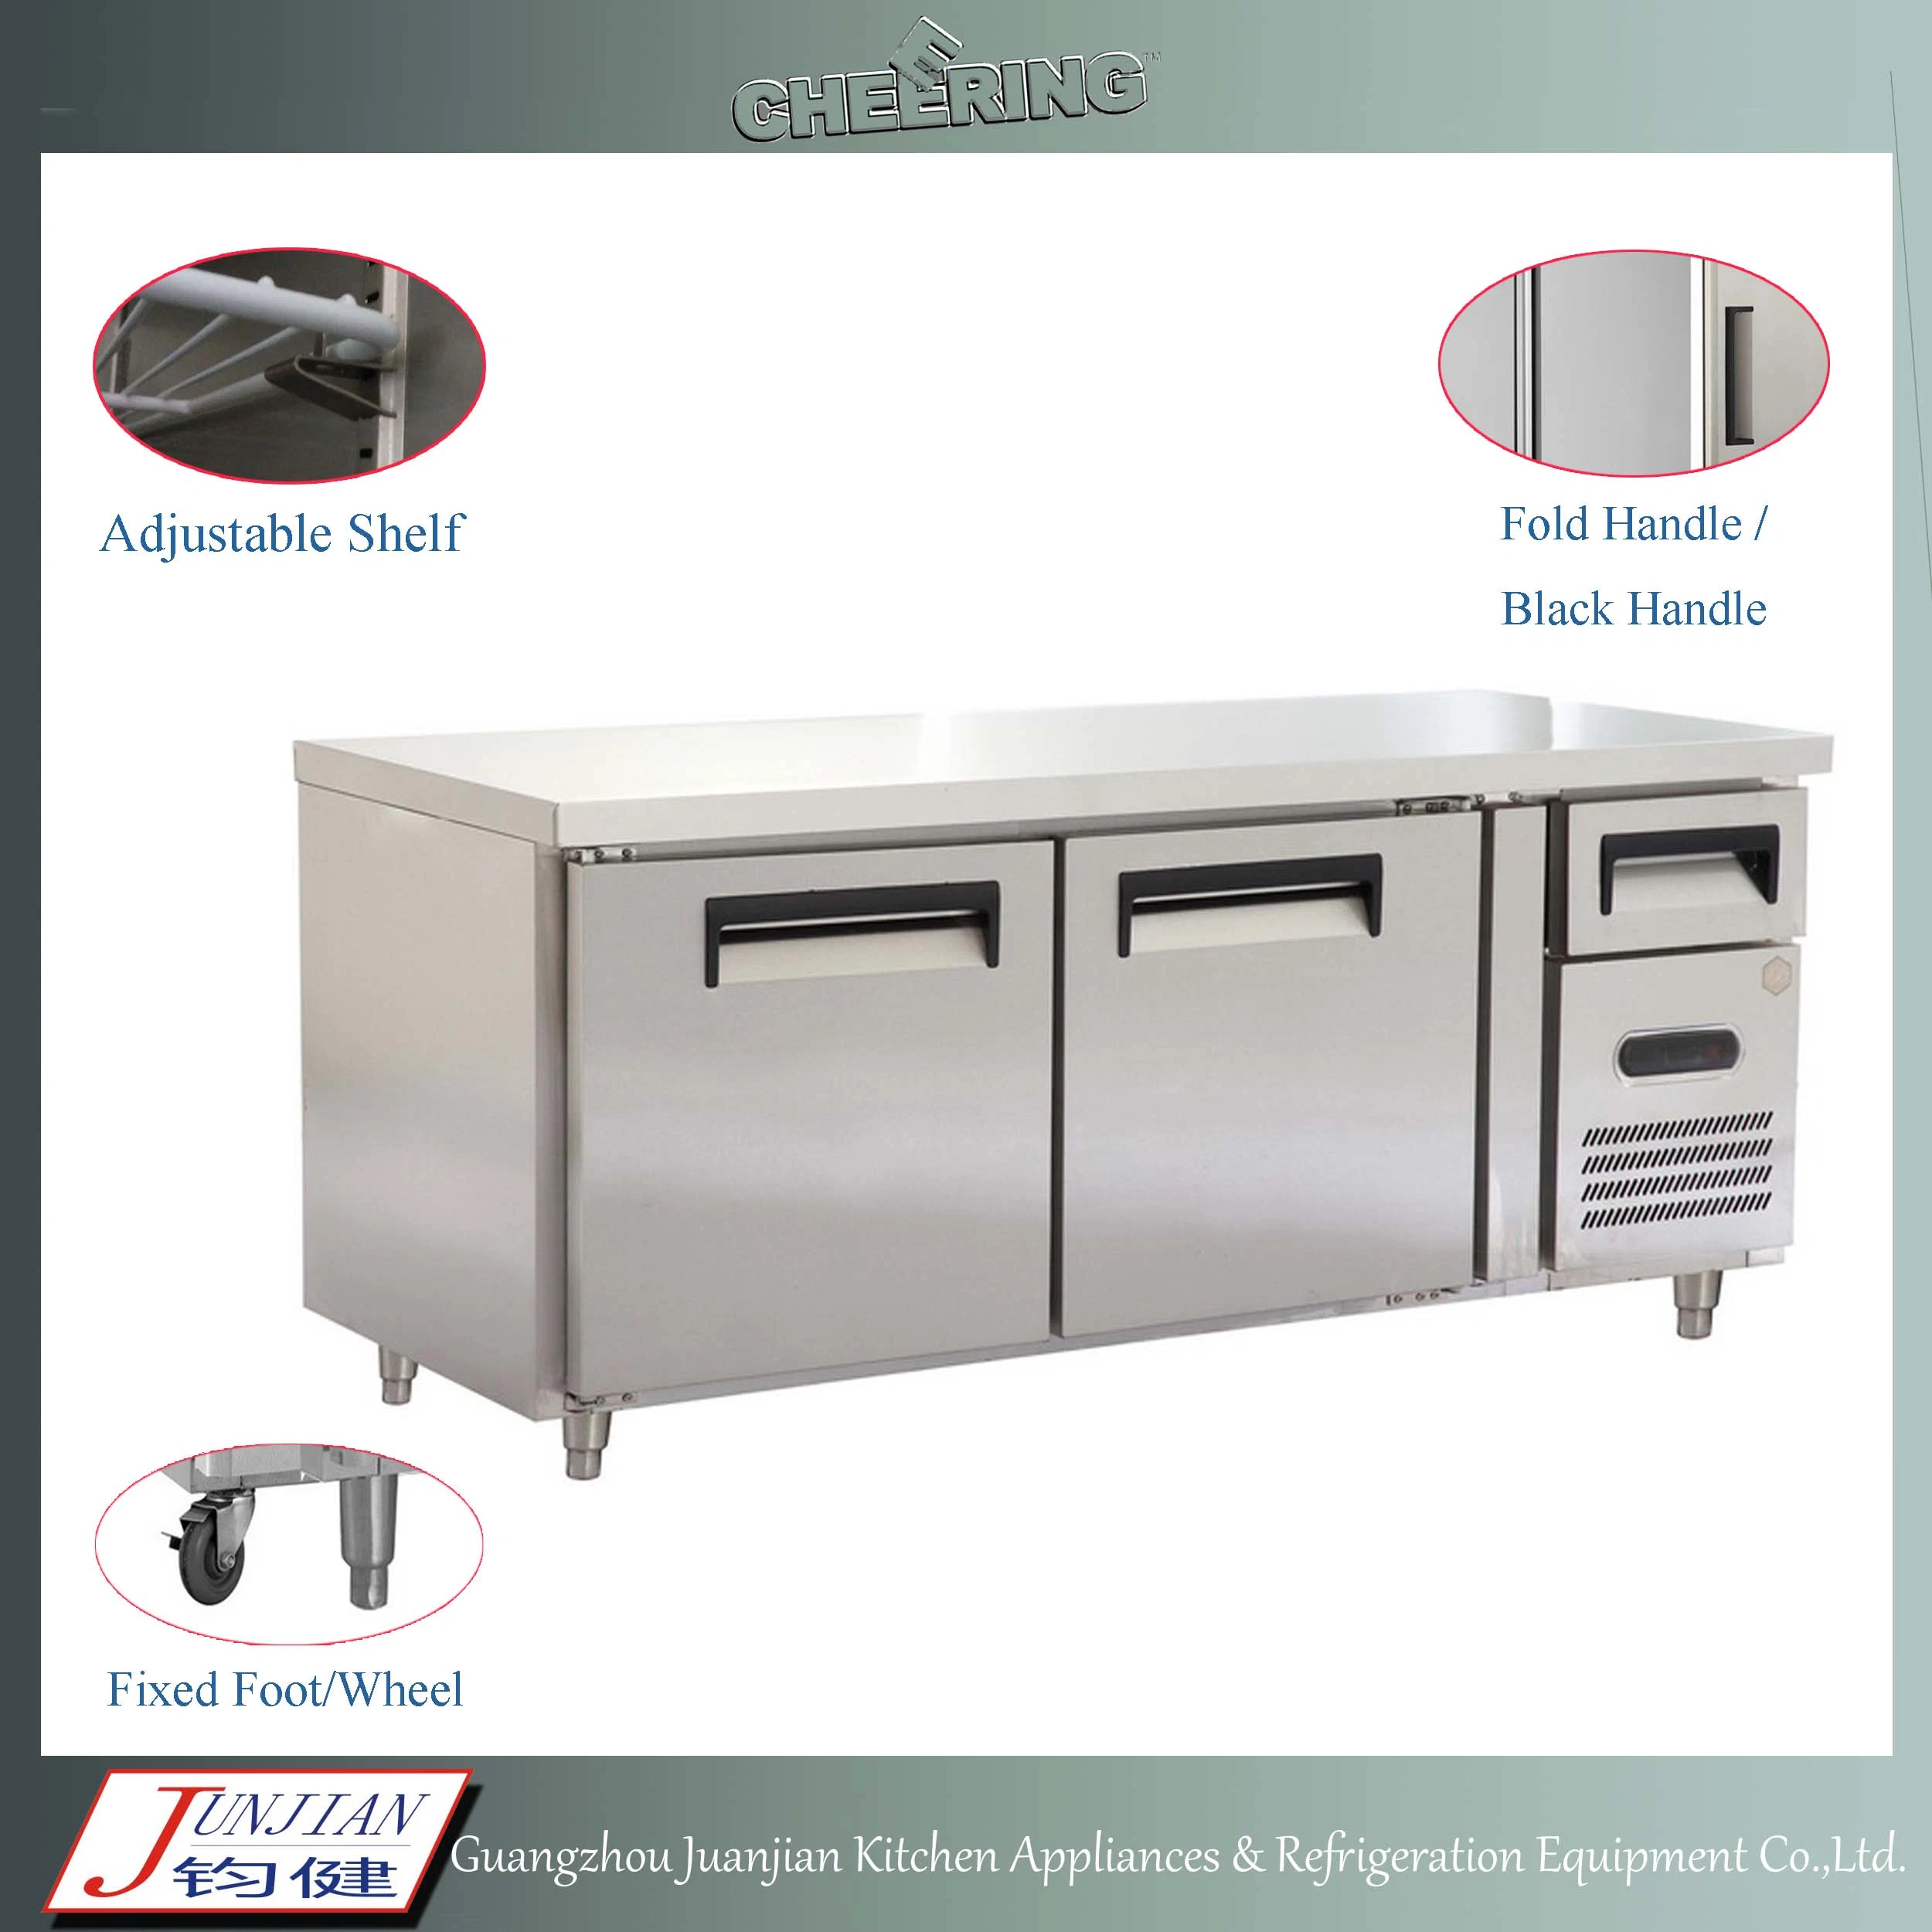 Customized Size 1.5m Stainless Steel Kitchen Undercounter Refrigerator Work Bench Fridge for Restaurant